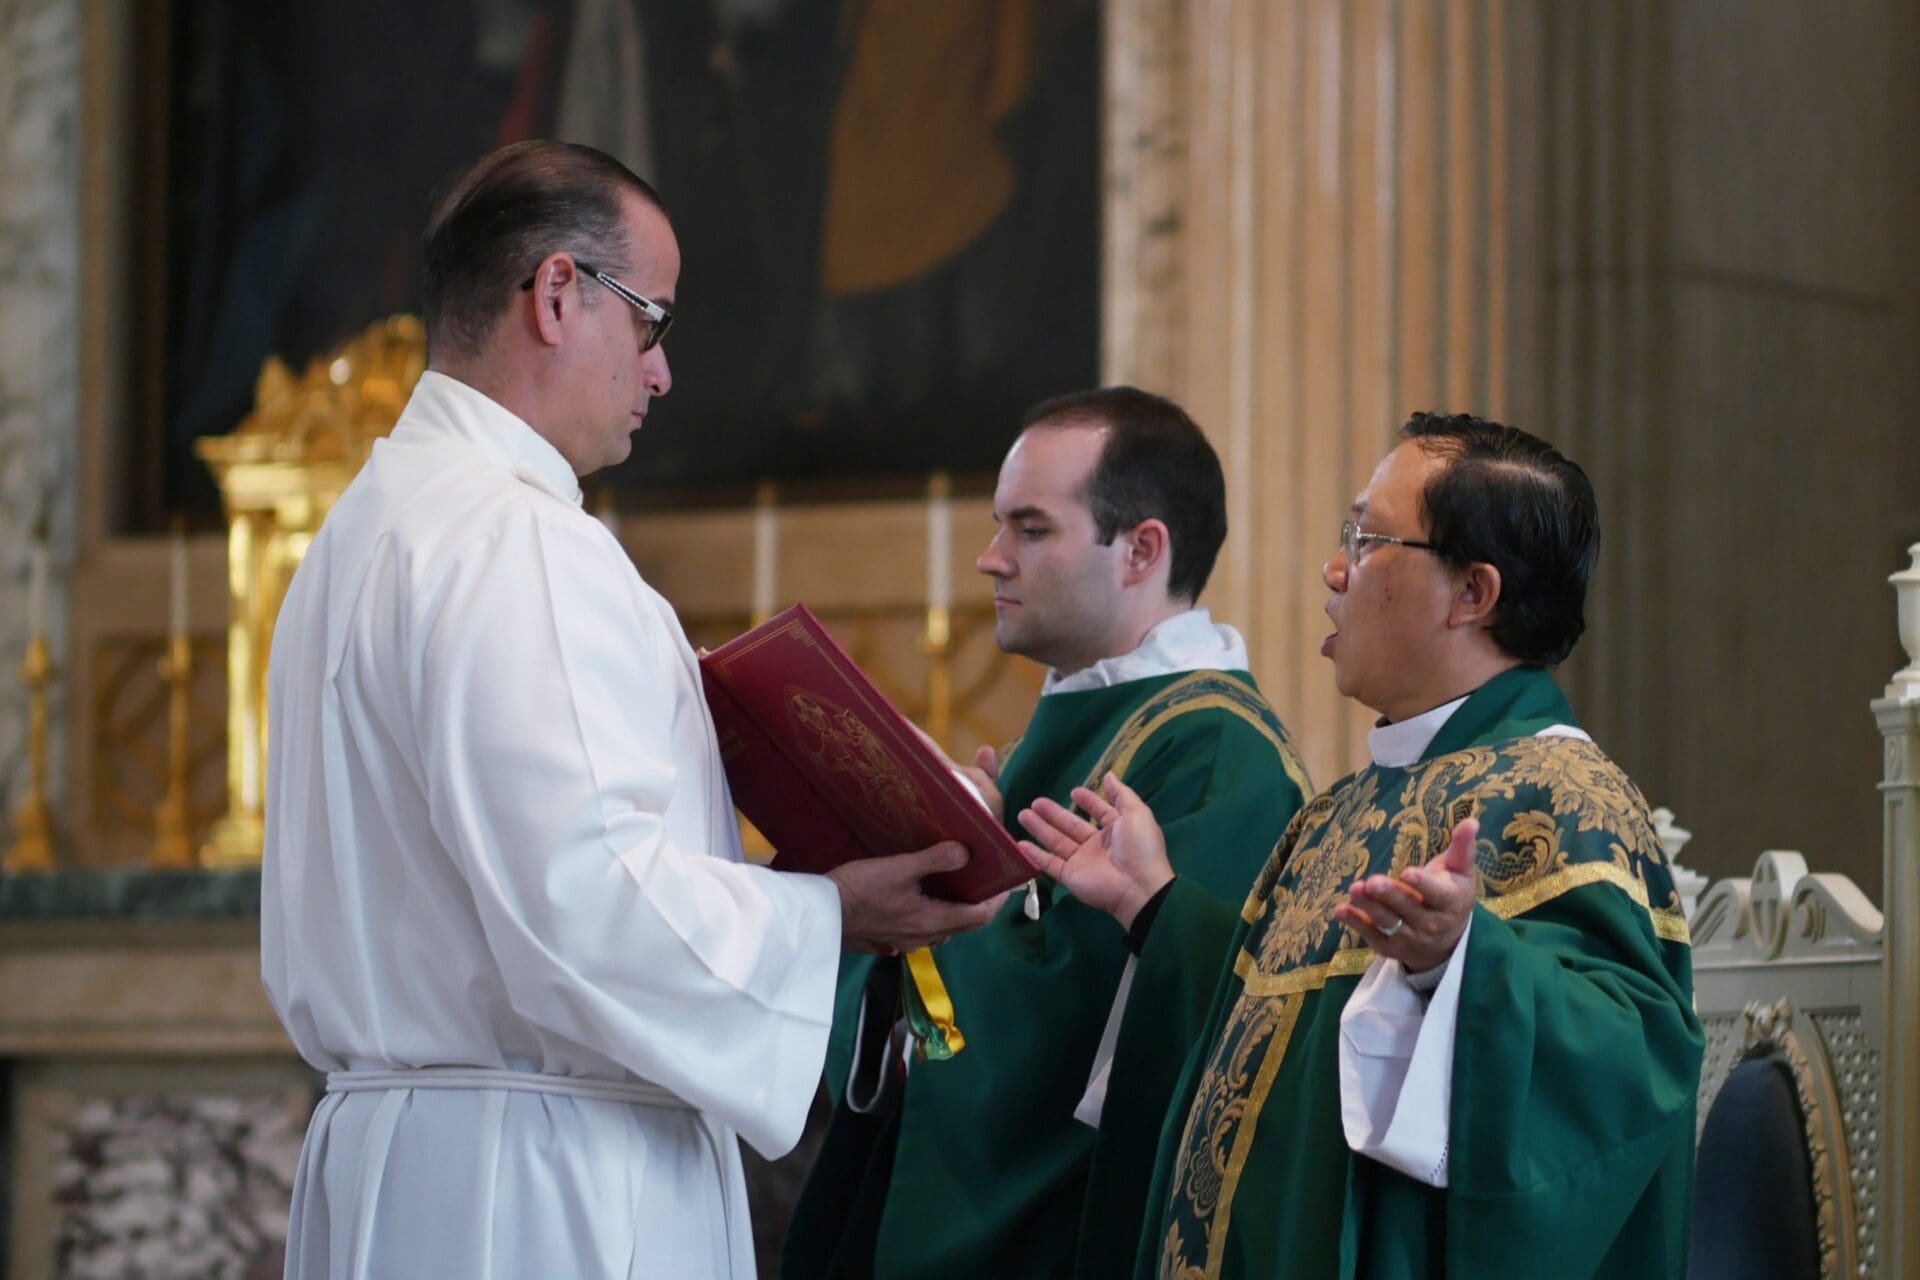 English Bishops Adjust Liturgical Translation, Following Vatican Concern